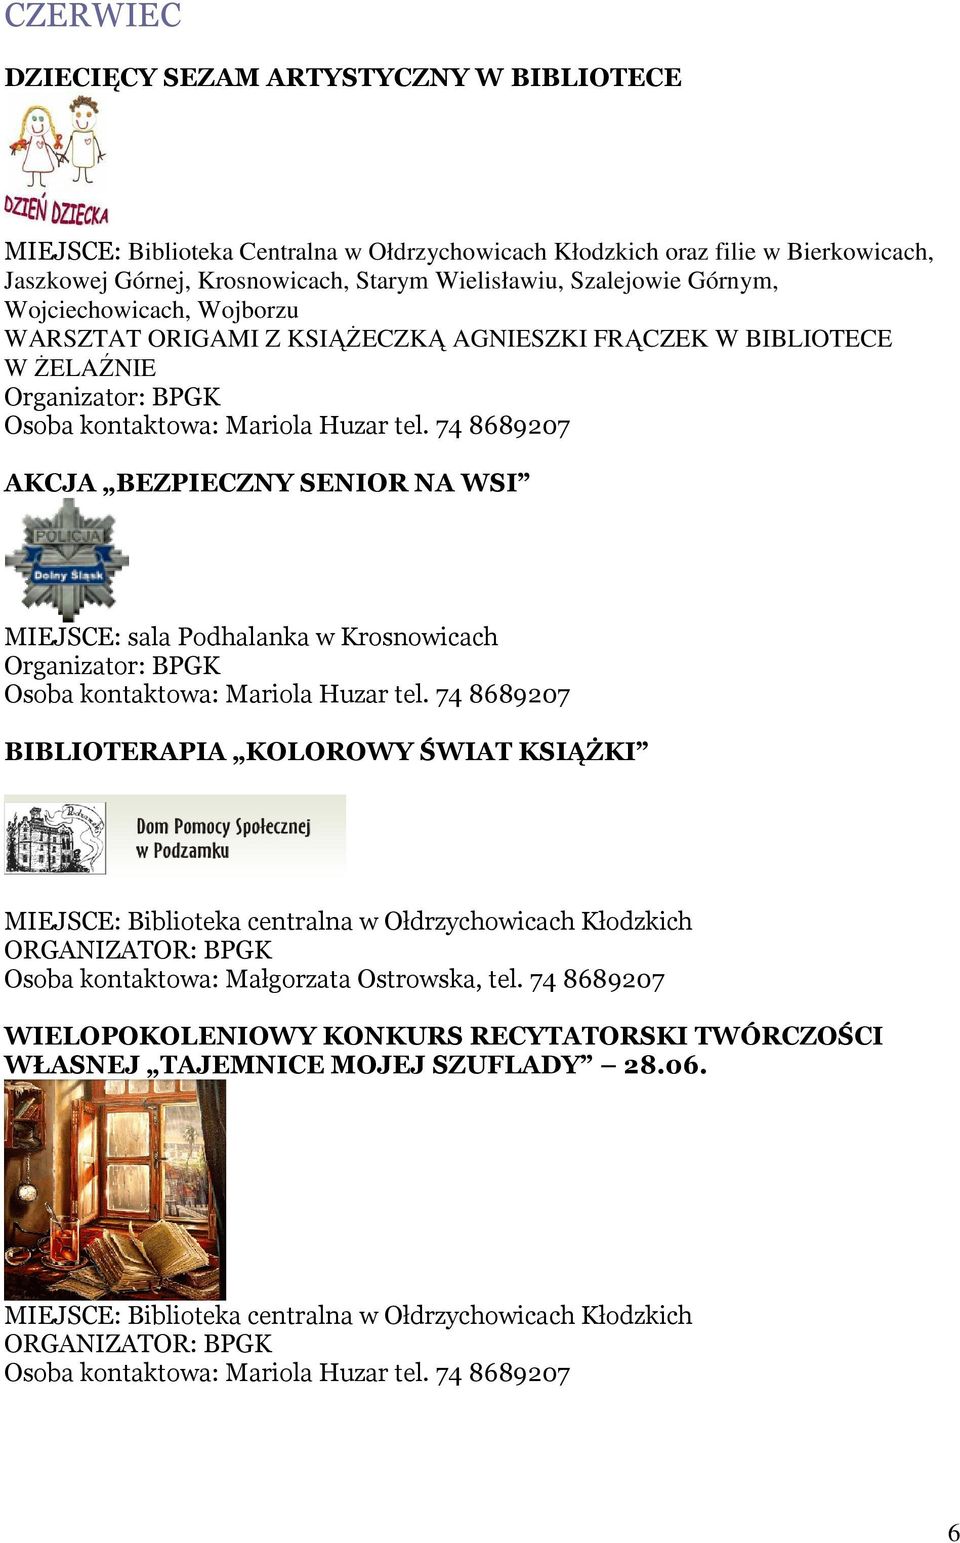 Biblioteka centralna w Ołdrzychowicach Kłodzkich Osoba kontaktowa: Małgorzata Ostrowska, tel.